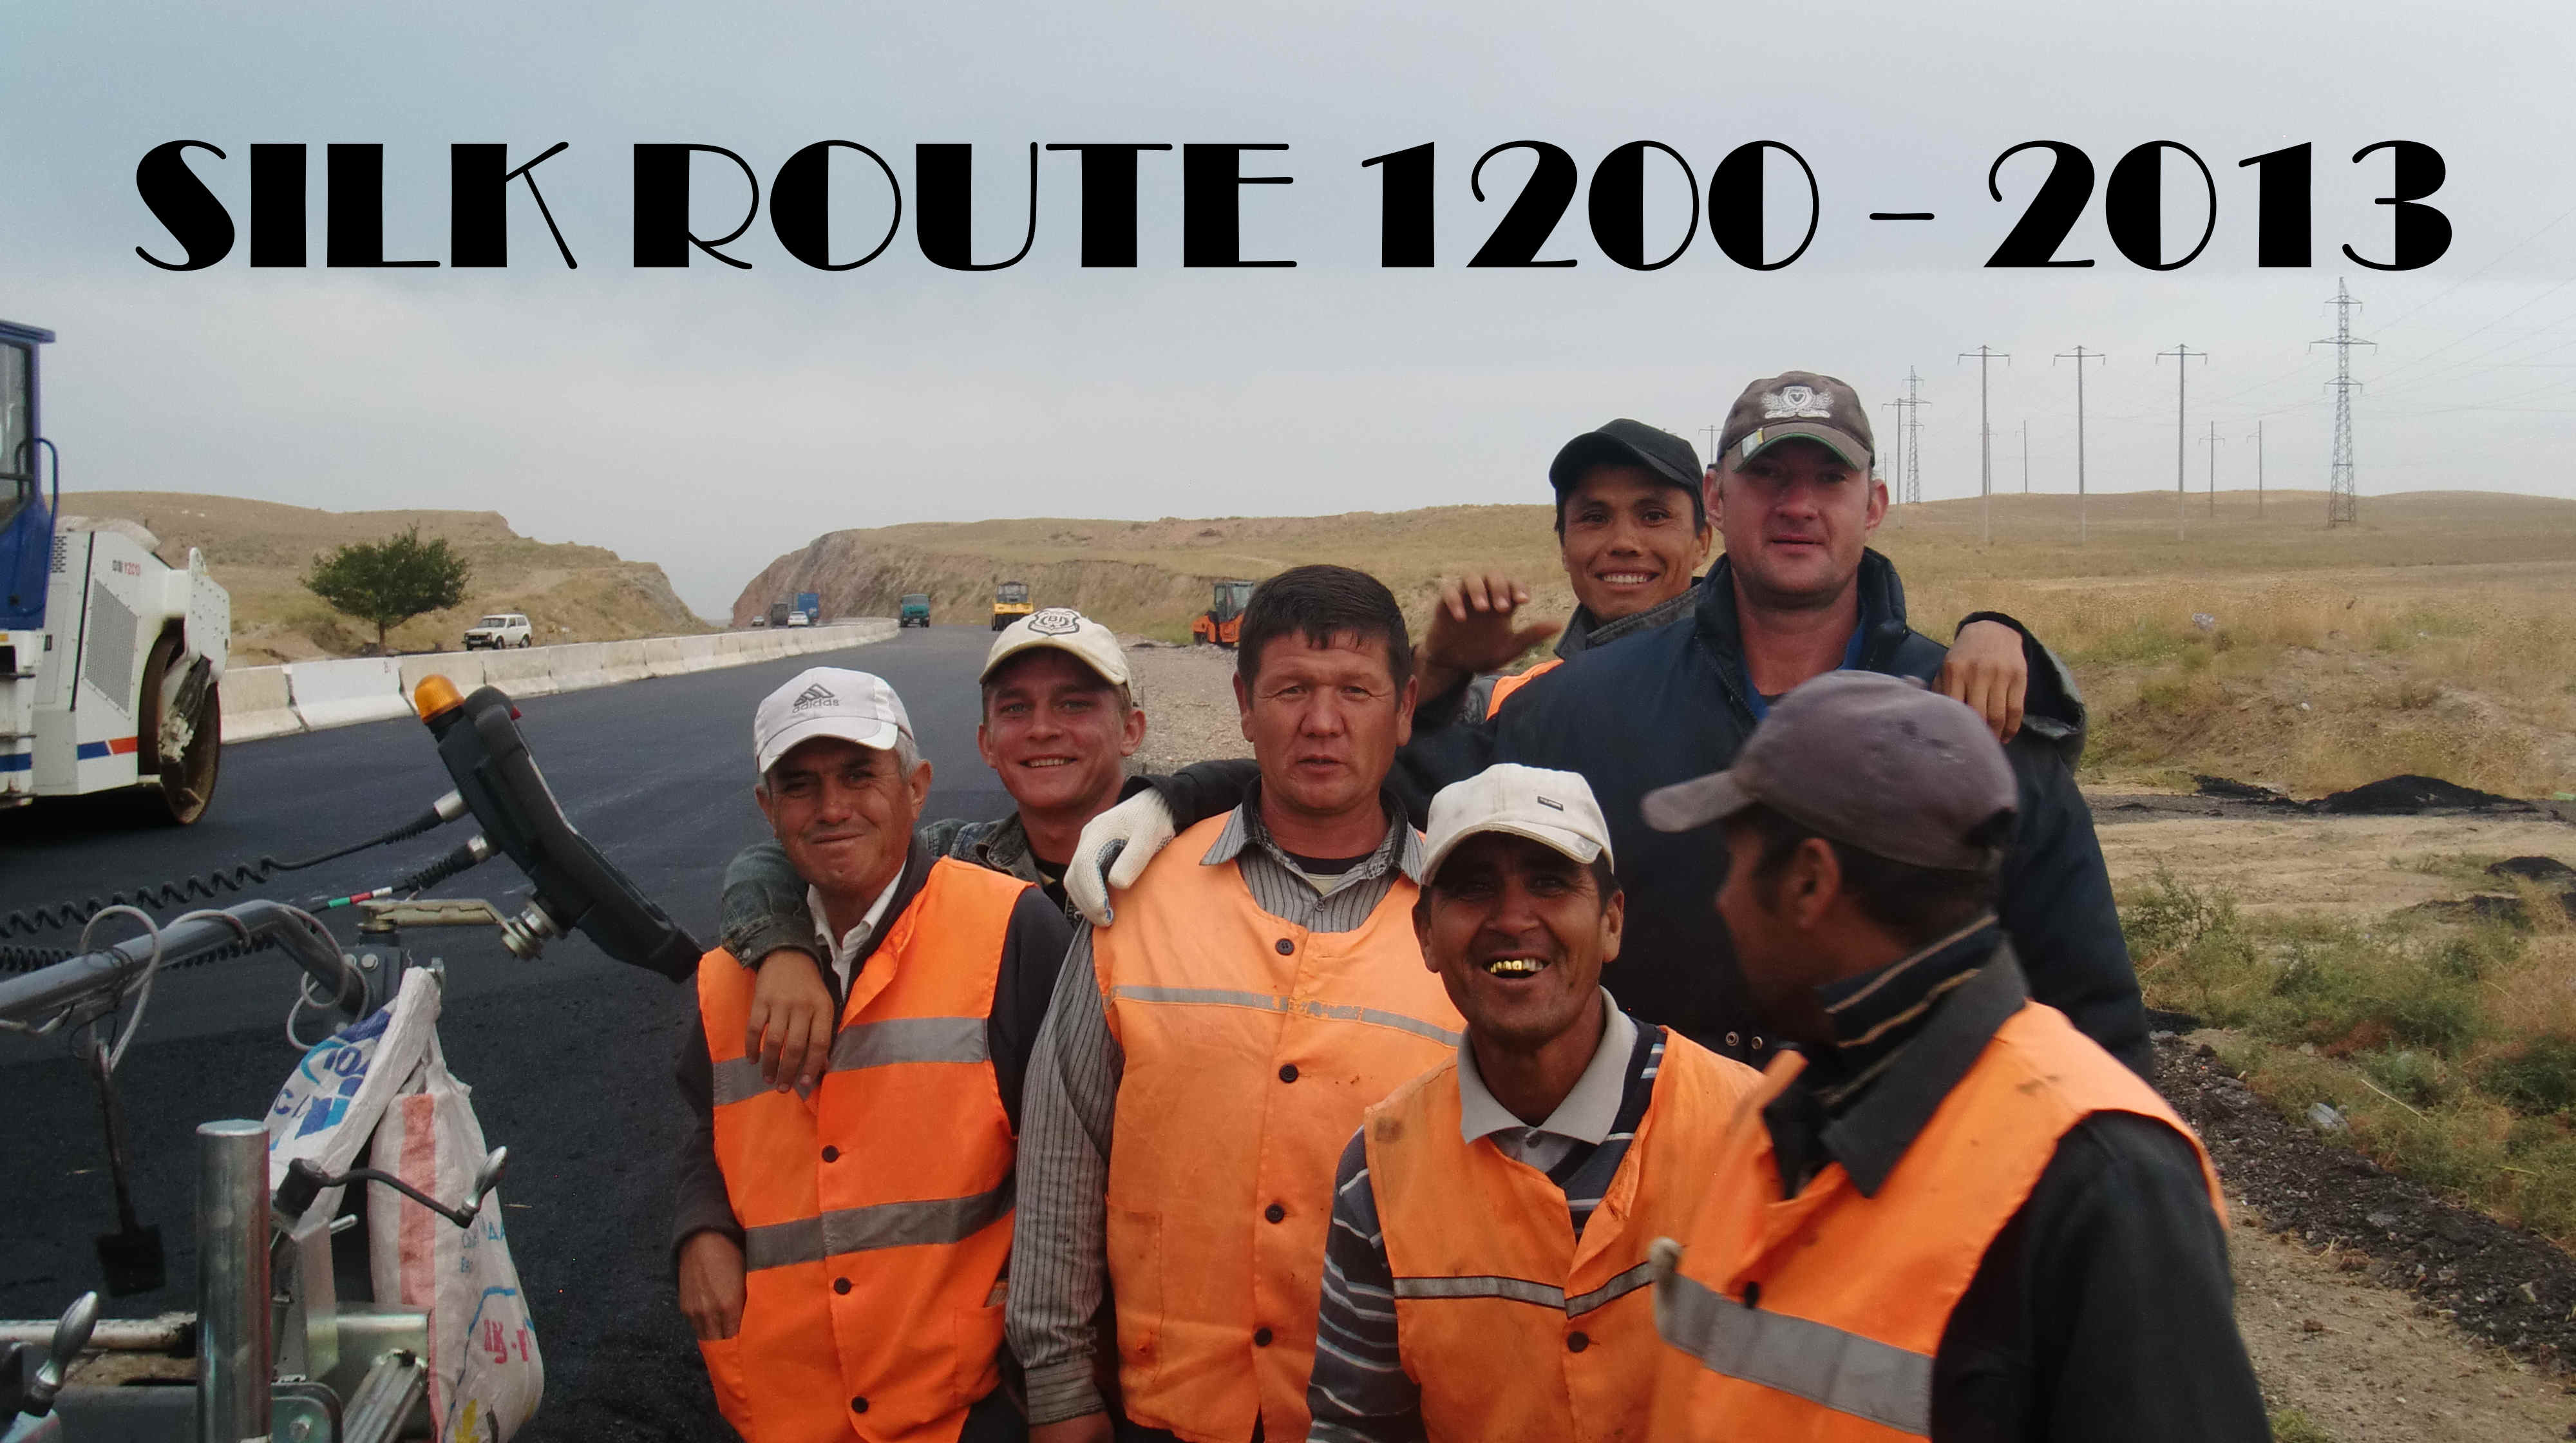 Silk Route 1200 2013